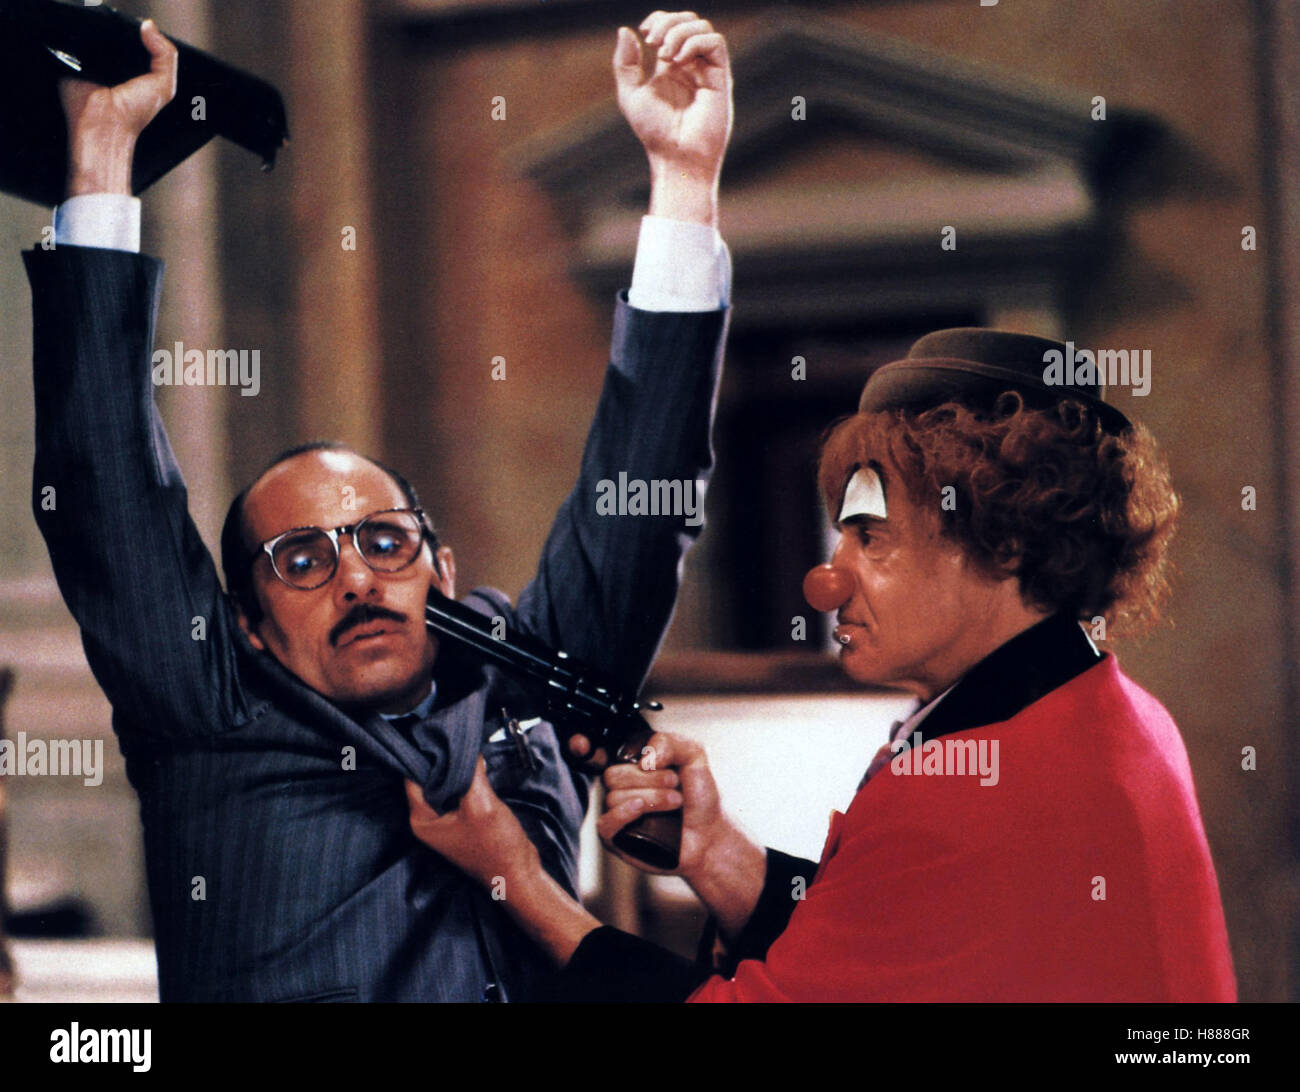 Der Boß, (HOLD-UP) F 1985, Regie: Alexandre Arcady, JEAN-PAUL BELMONDO (re), Stichwort: Revolver, Clown, Bedrohung, Hände hoch, Waffe Stock Photo